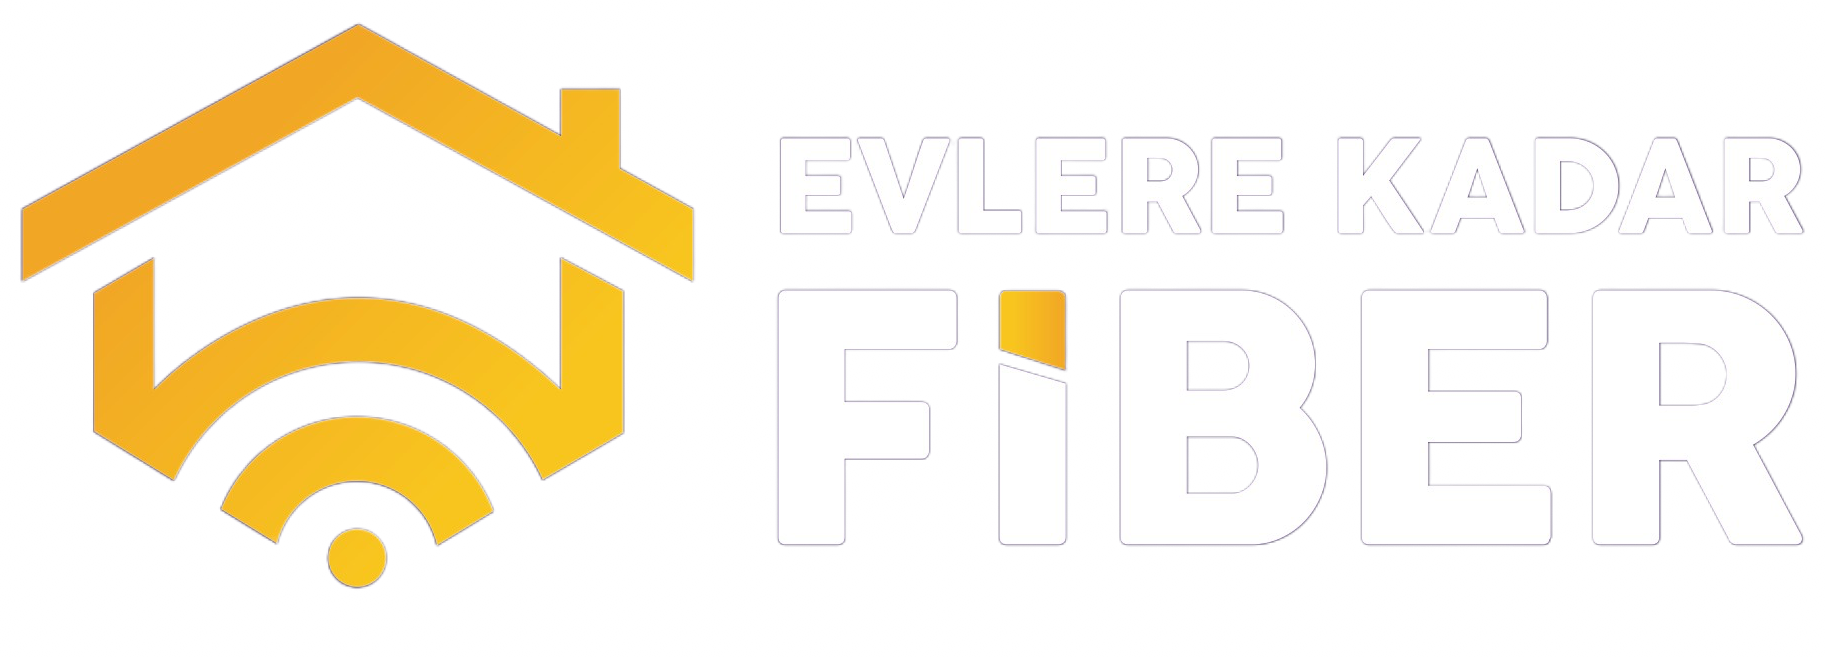 Evlere-fiber-logo